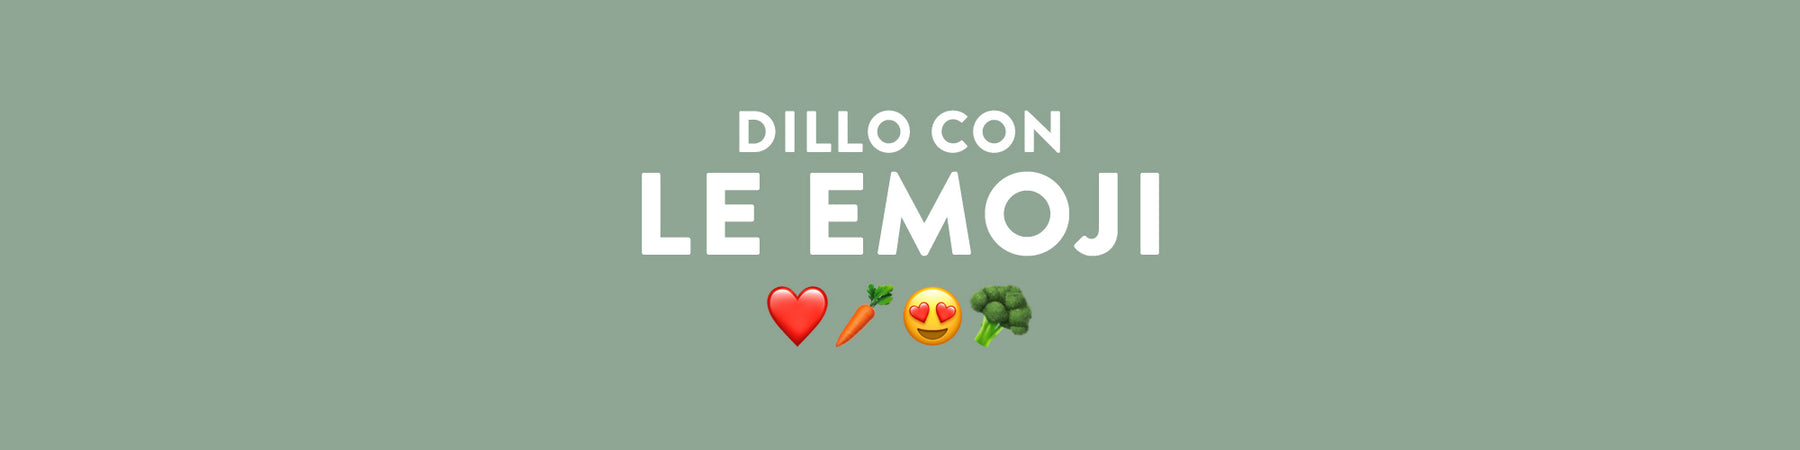 World Emoji Day: come un messaggio può cambiare la giornata